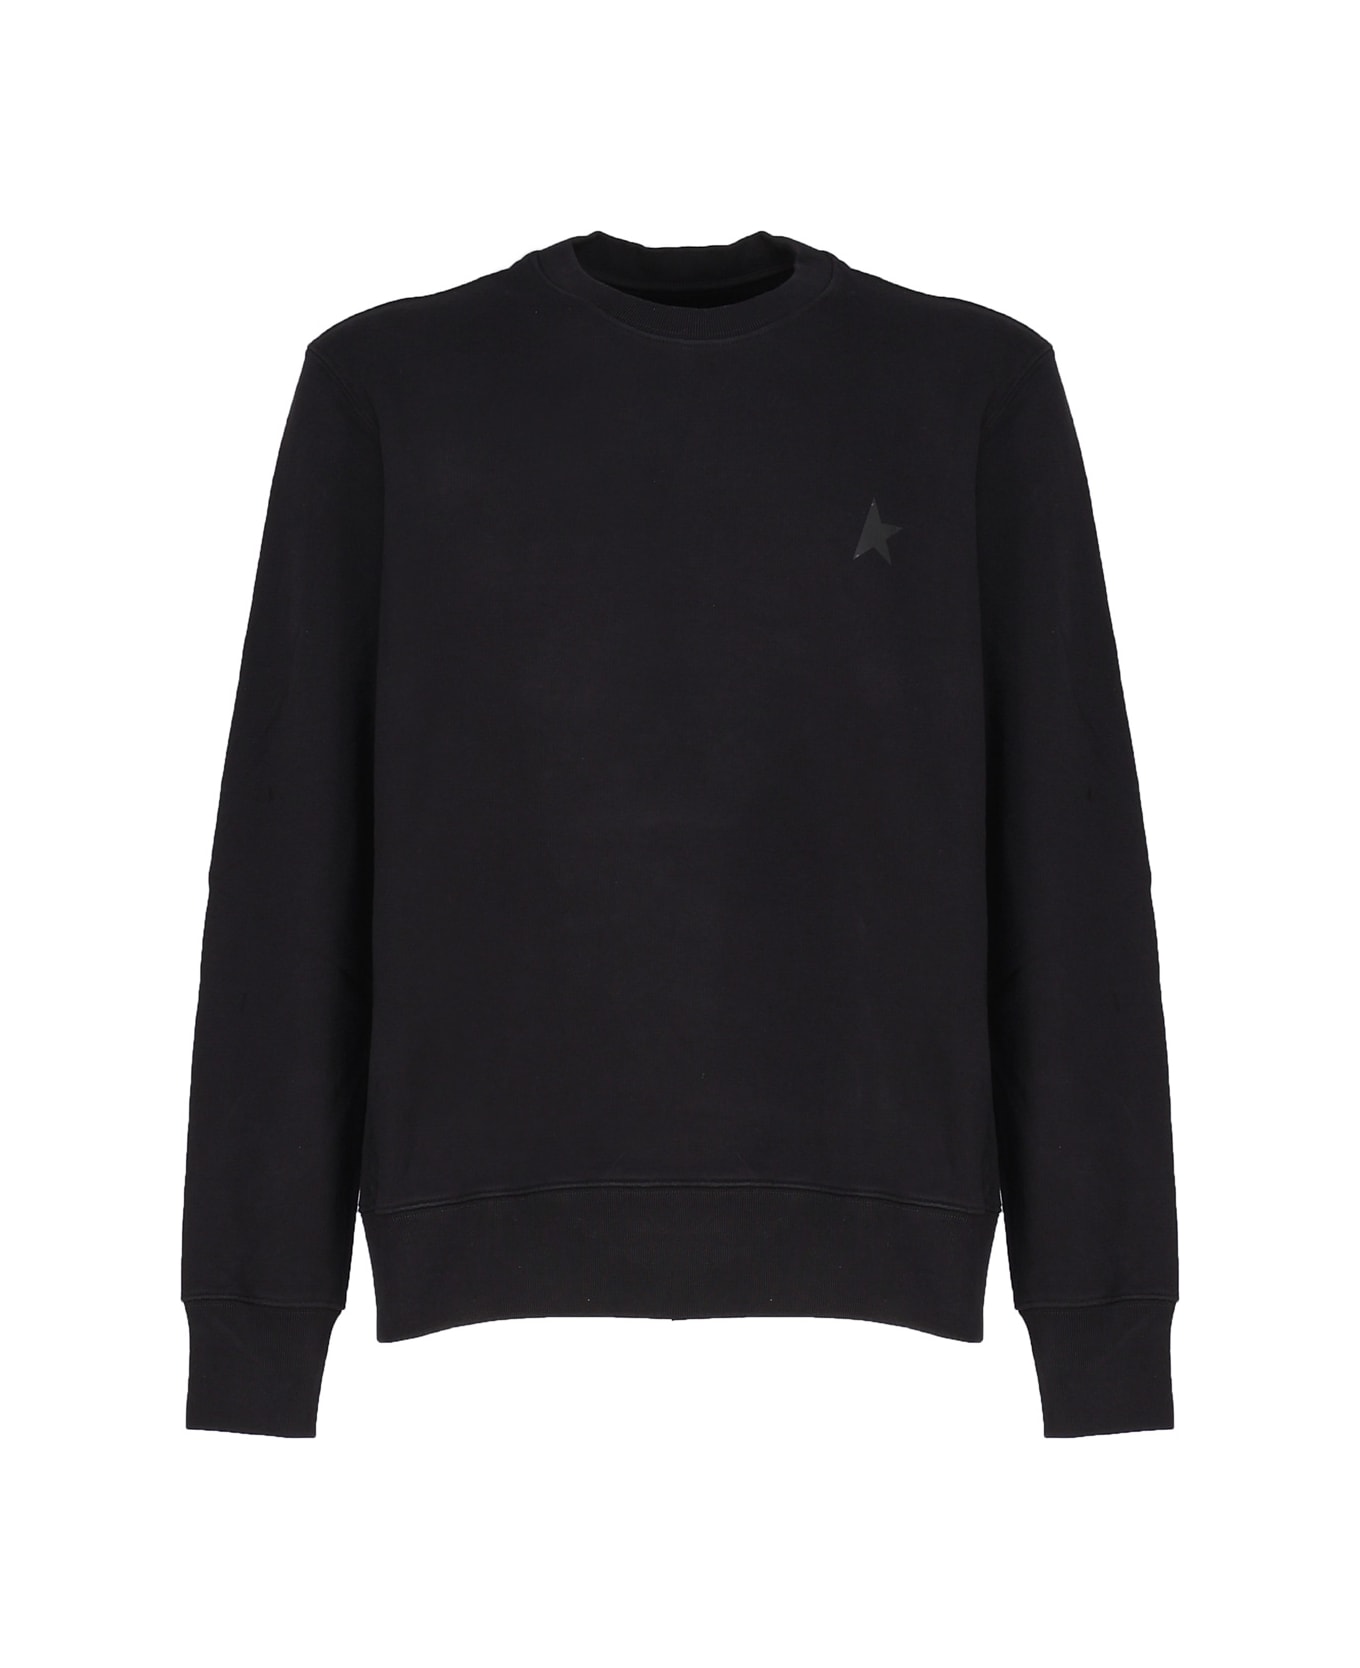 Golden Goose Star Sweatshirt - Black